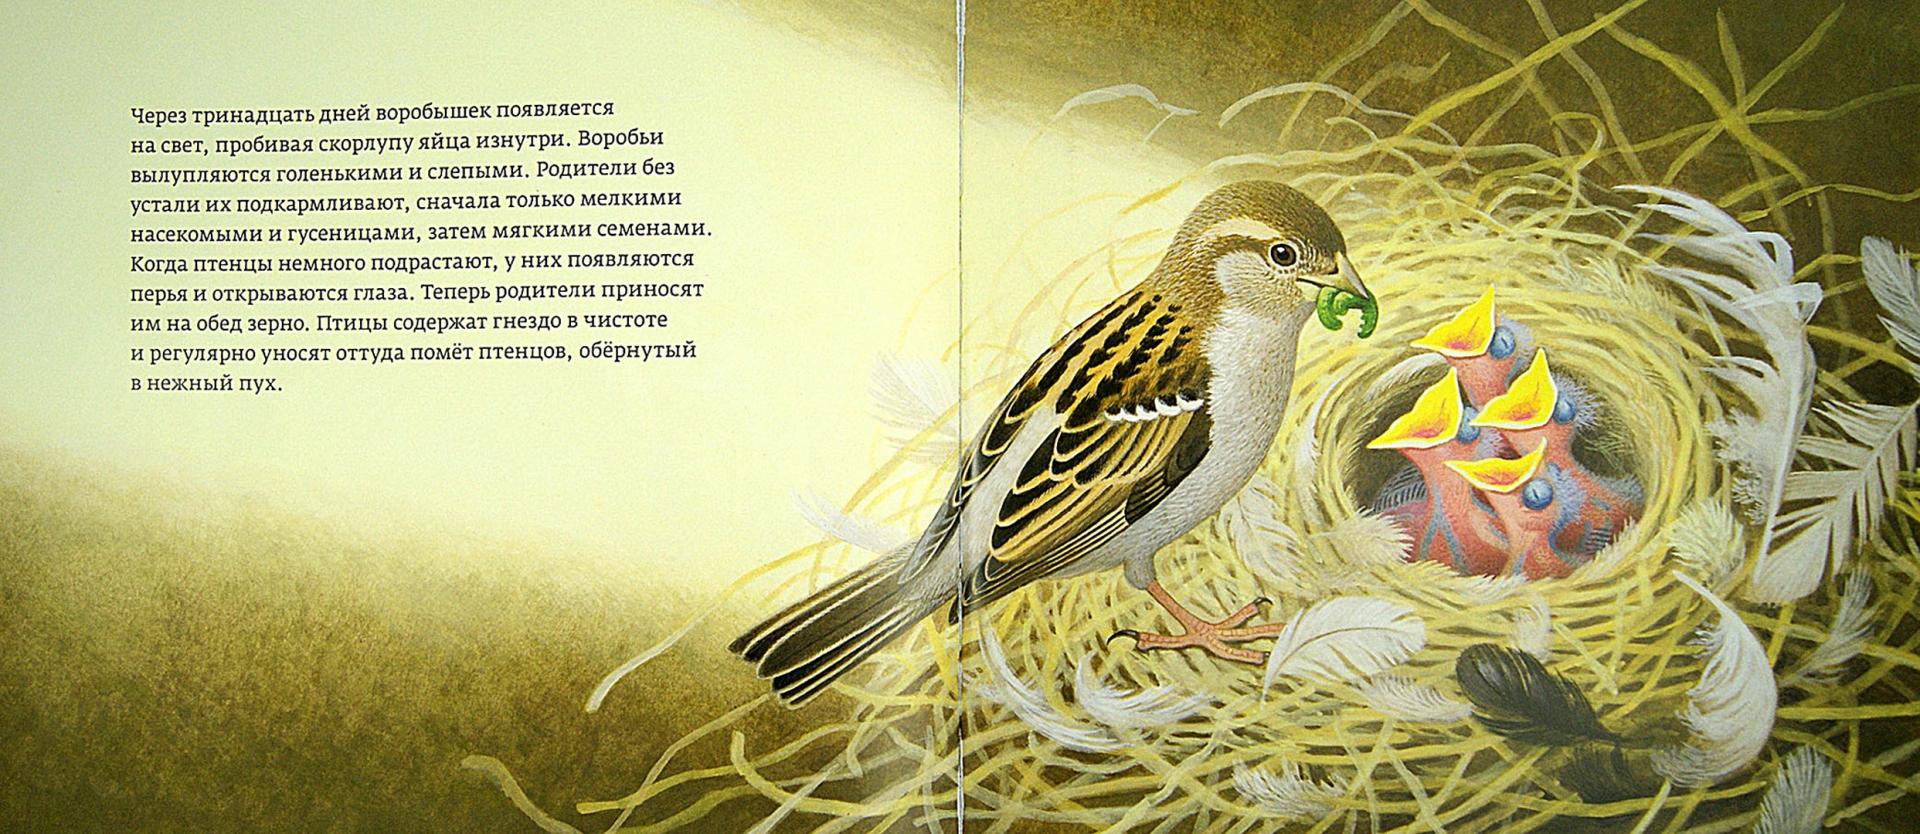 Иллюстрация 1 из 35 для Год с воробьями - Томас Мюллер | Лабиринт - книги. Источник: Лабиринт